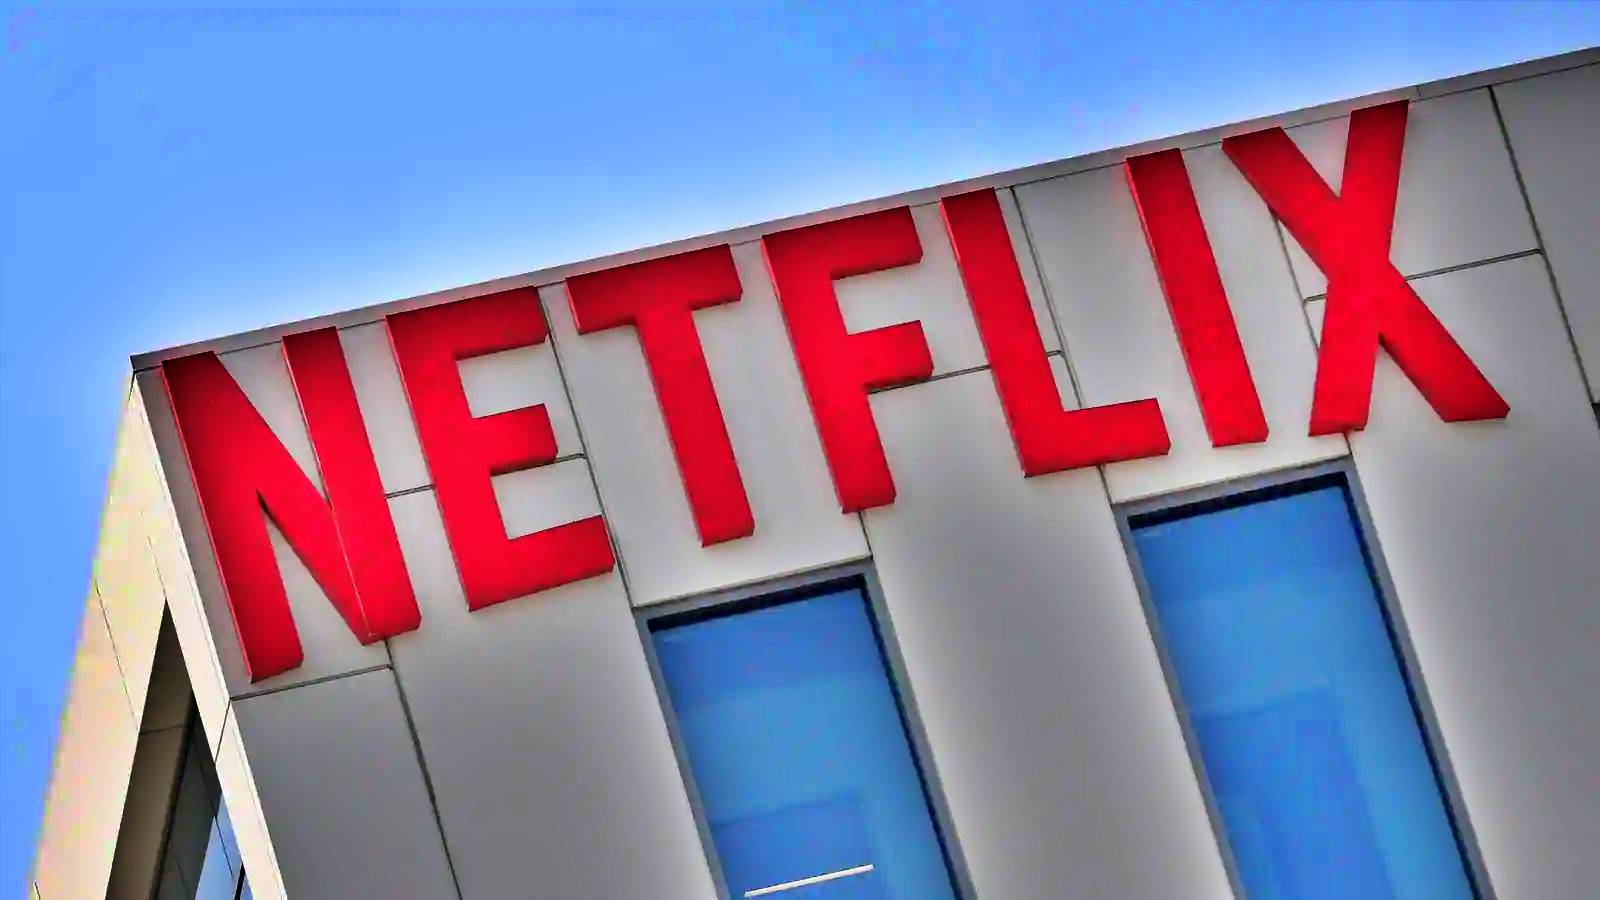 Netflix MAJOR utfärdar kontroversiell förändring 2022